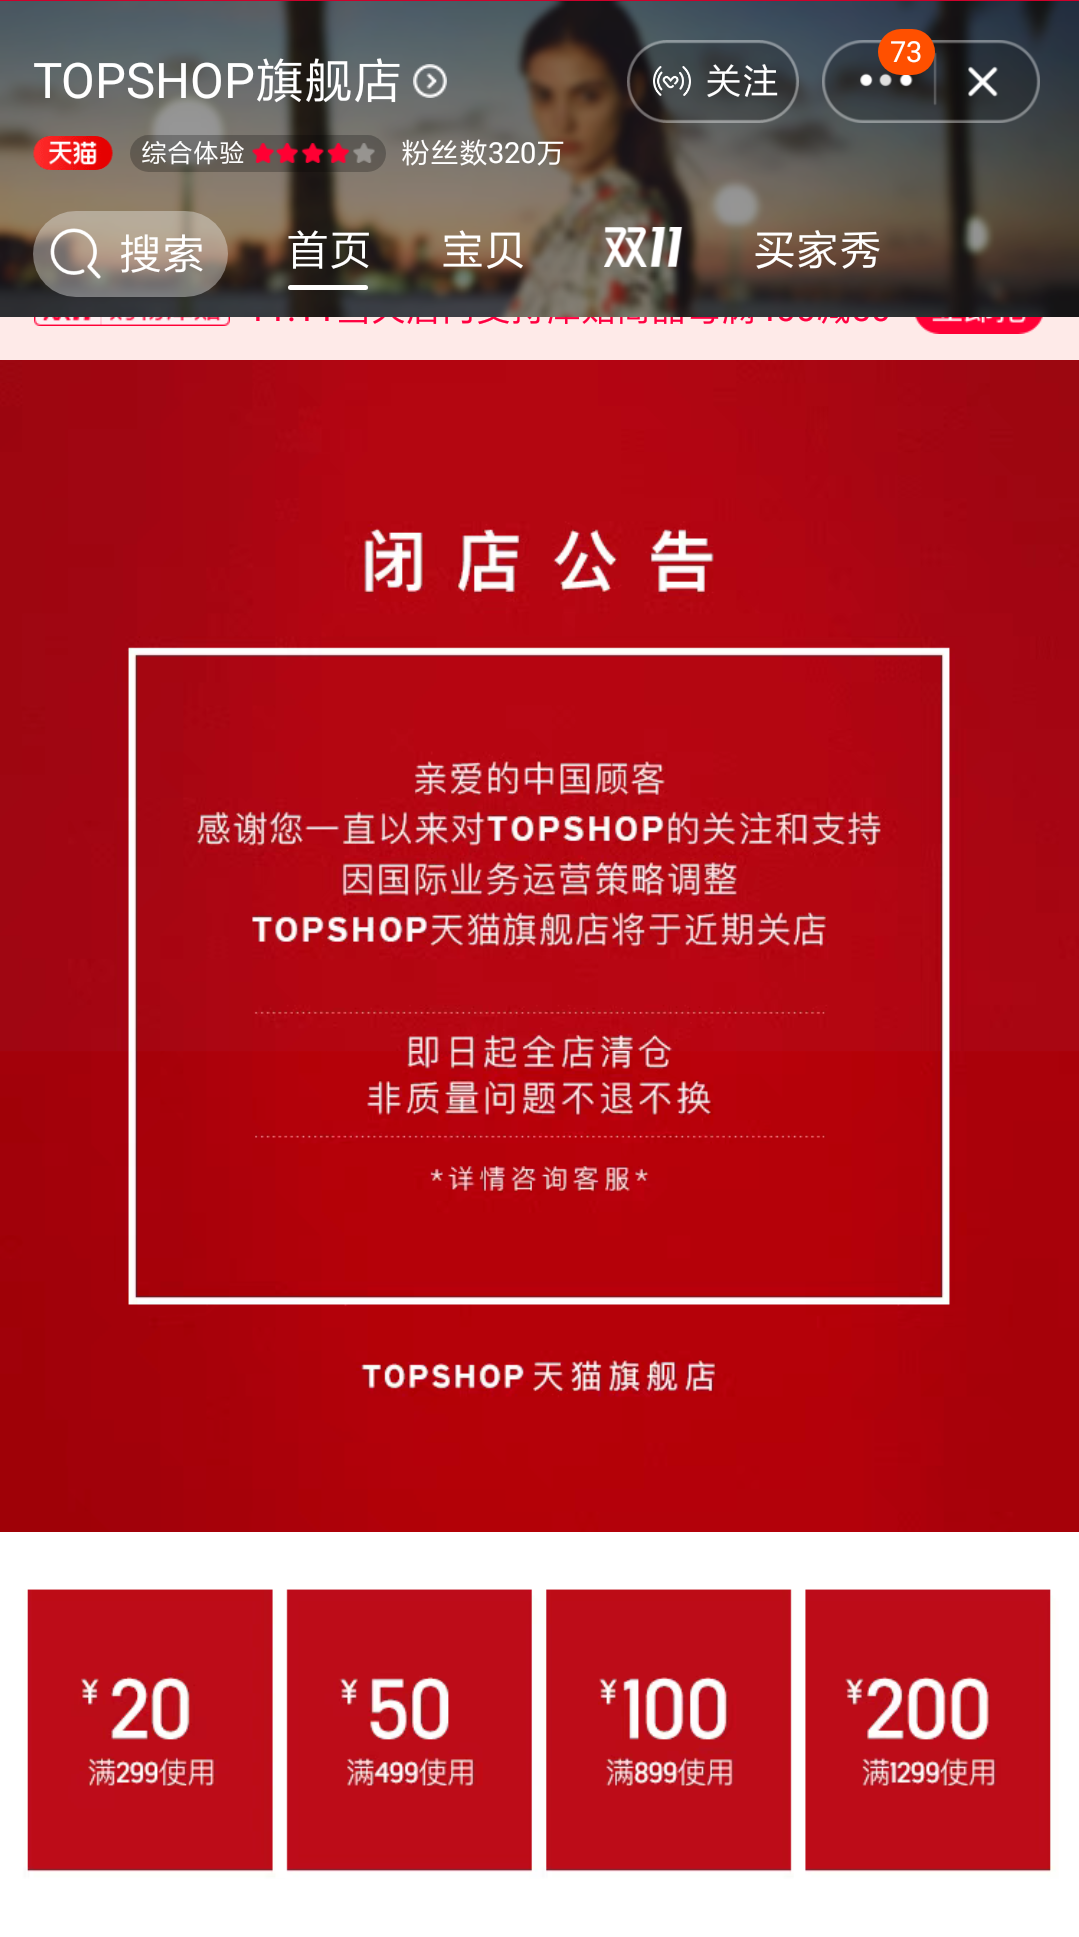 英国TOPSHOP将关闭天猫店 又一快时尚品牌“退出”中国市场